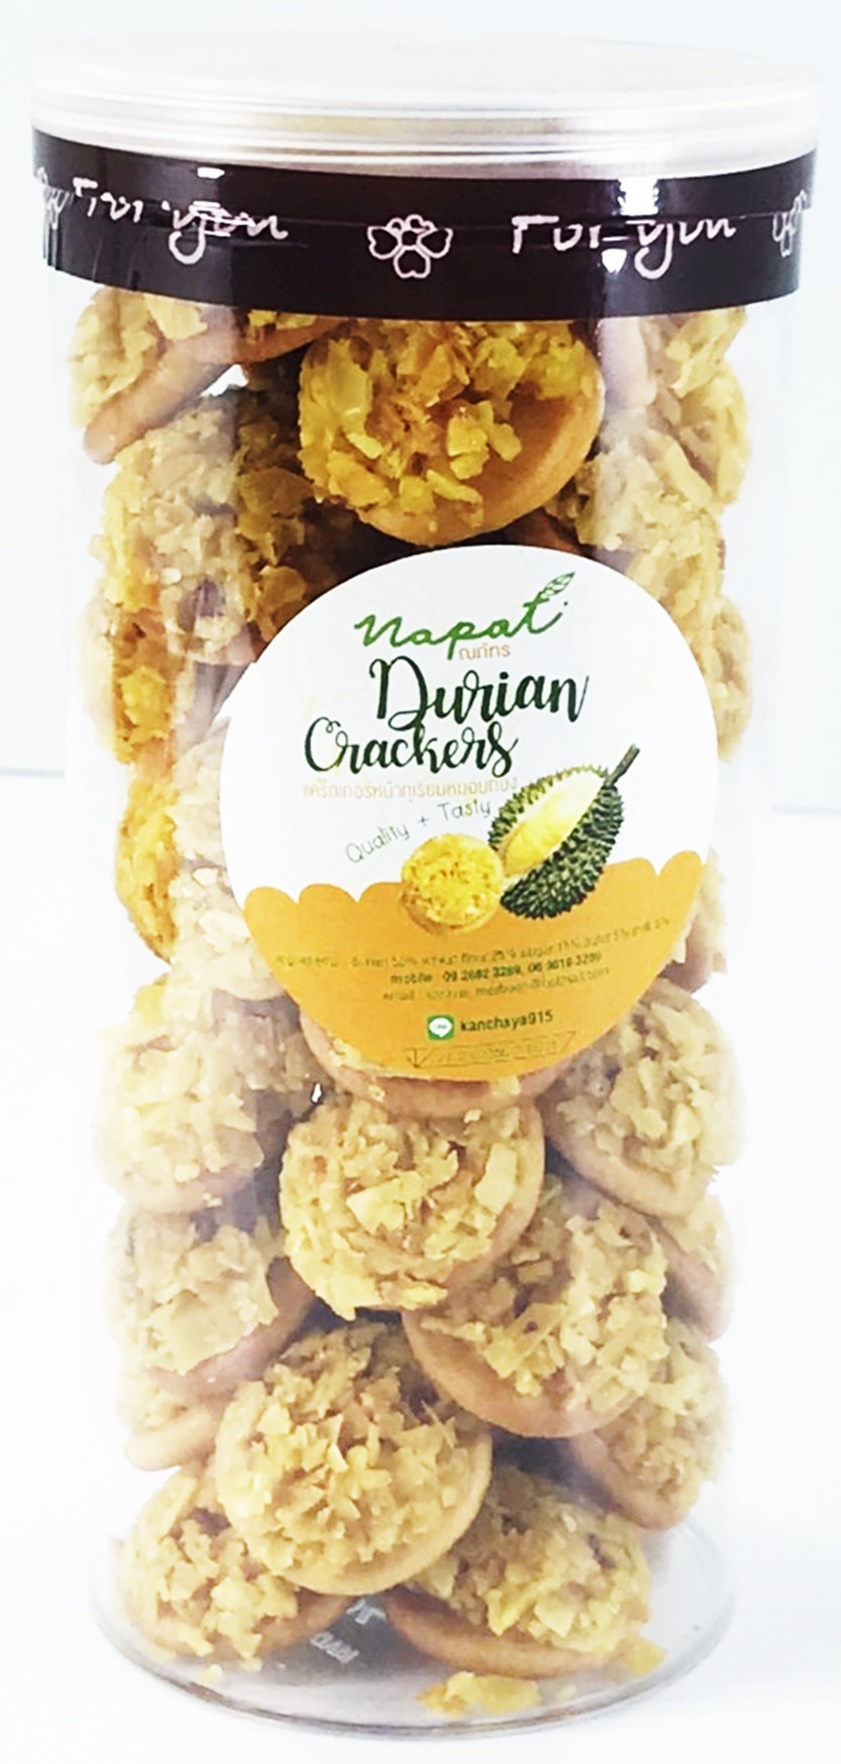 แครกเกอร์ทุเรียน แบบกระปุกใหญ่ Big ขนาด 270 กรัม✔ อบกรอบ Durian Crackers ขนม แครกเกอร์ทุเรียนทอด หมอนทอง สด อร่อย ของทานเล่น  แคกเกอร์ แคกเกอ